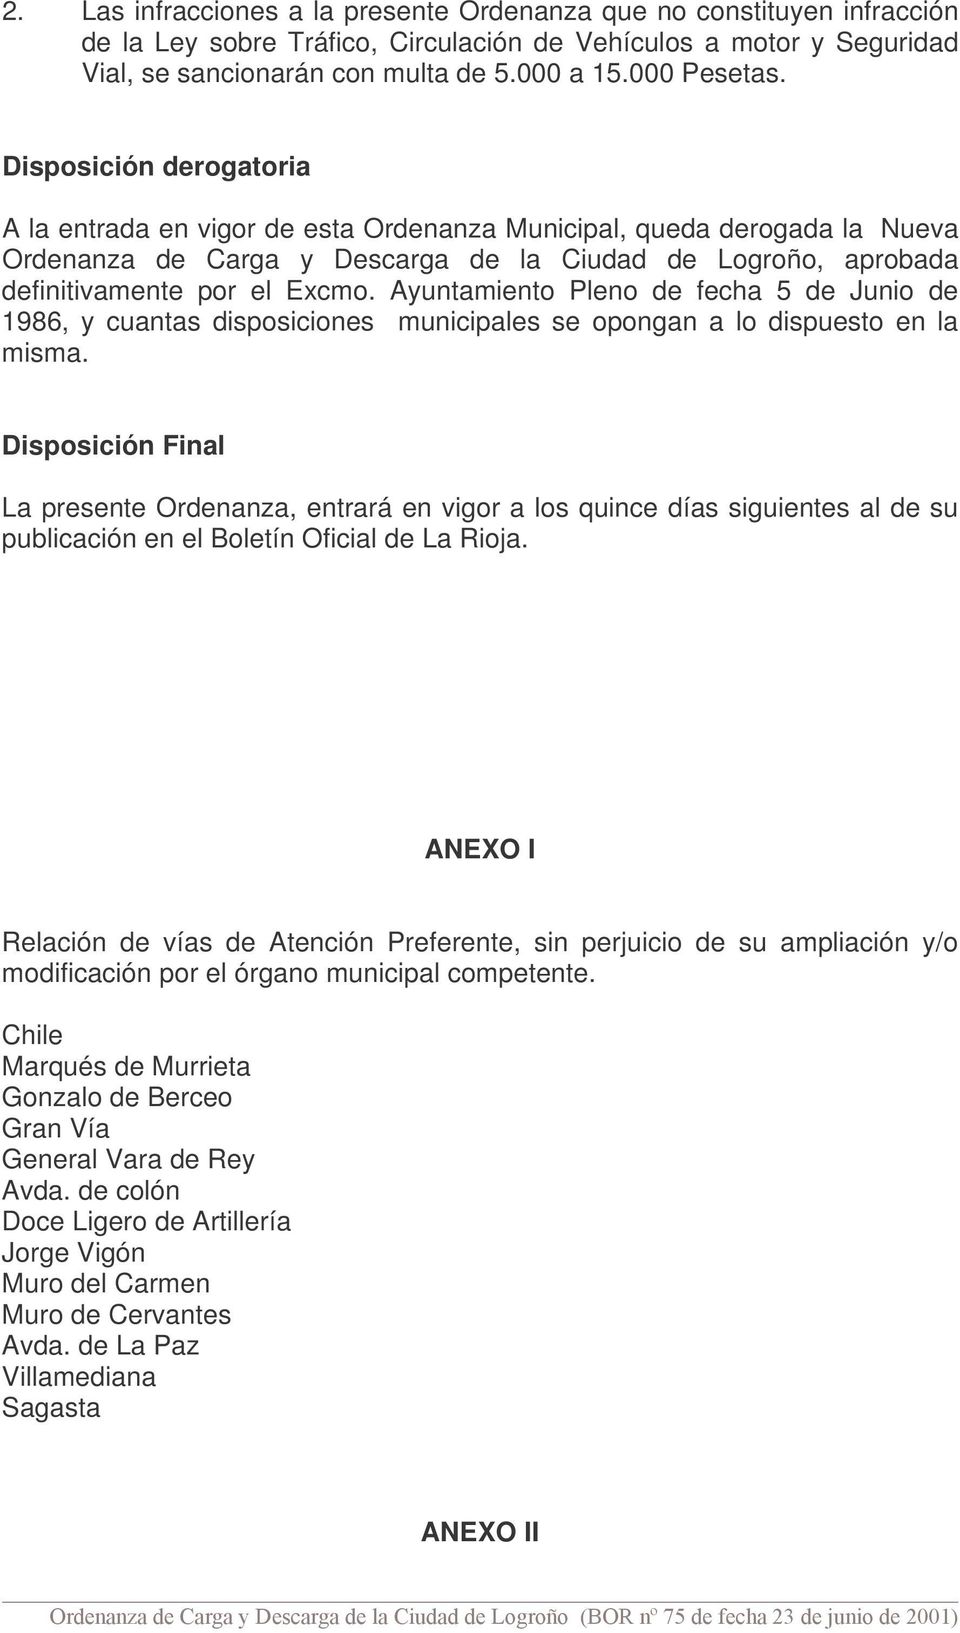 Disposición derogatoria A la entrada en vigor de esta Ordenanza Municipal, queda derogada la Nueva Ordenanza de Carga y Descarga de la Ciudad de Logroño, aprobada definitivamente por el Excmo.